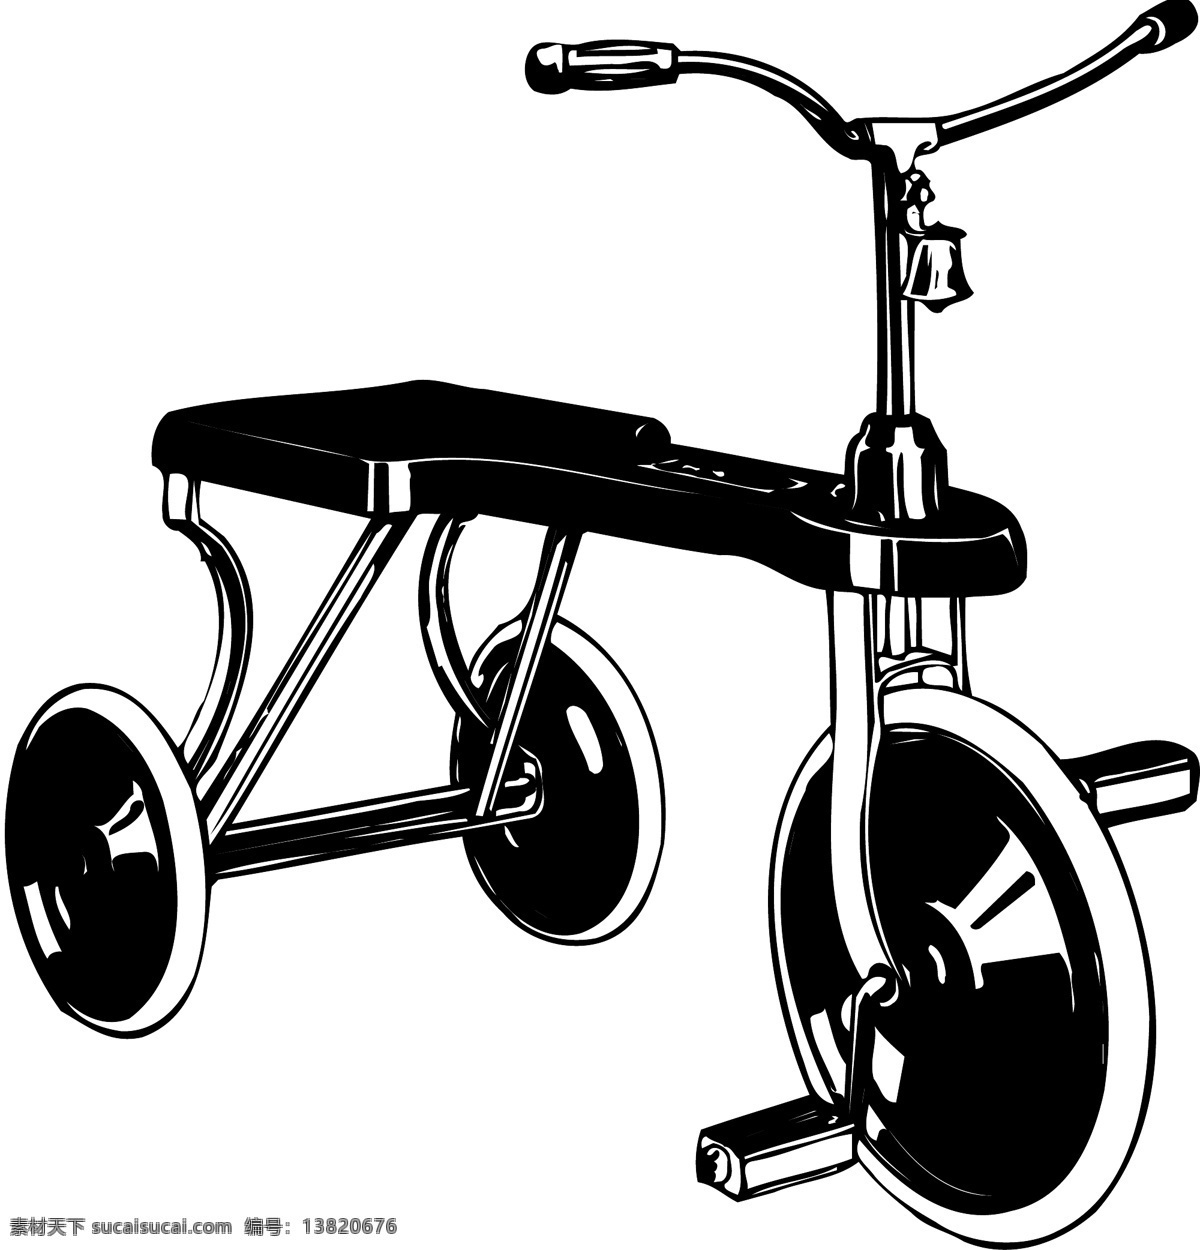 三轮自行车 矢量 eps0001 设计素材 自行车篇 交通运输 矢量图库 白色